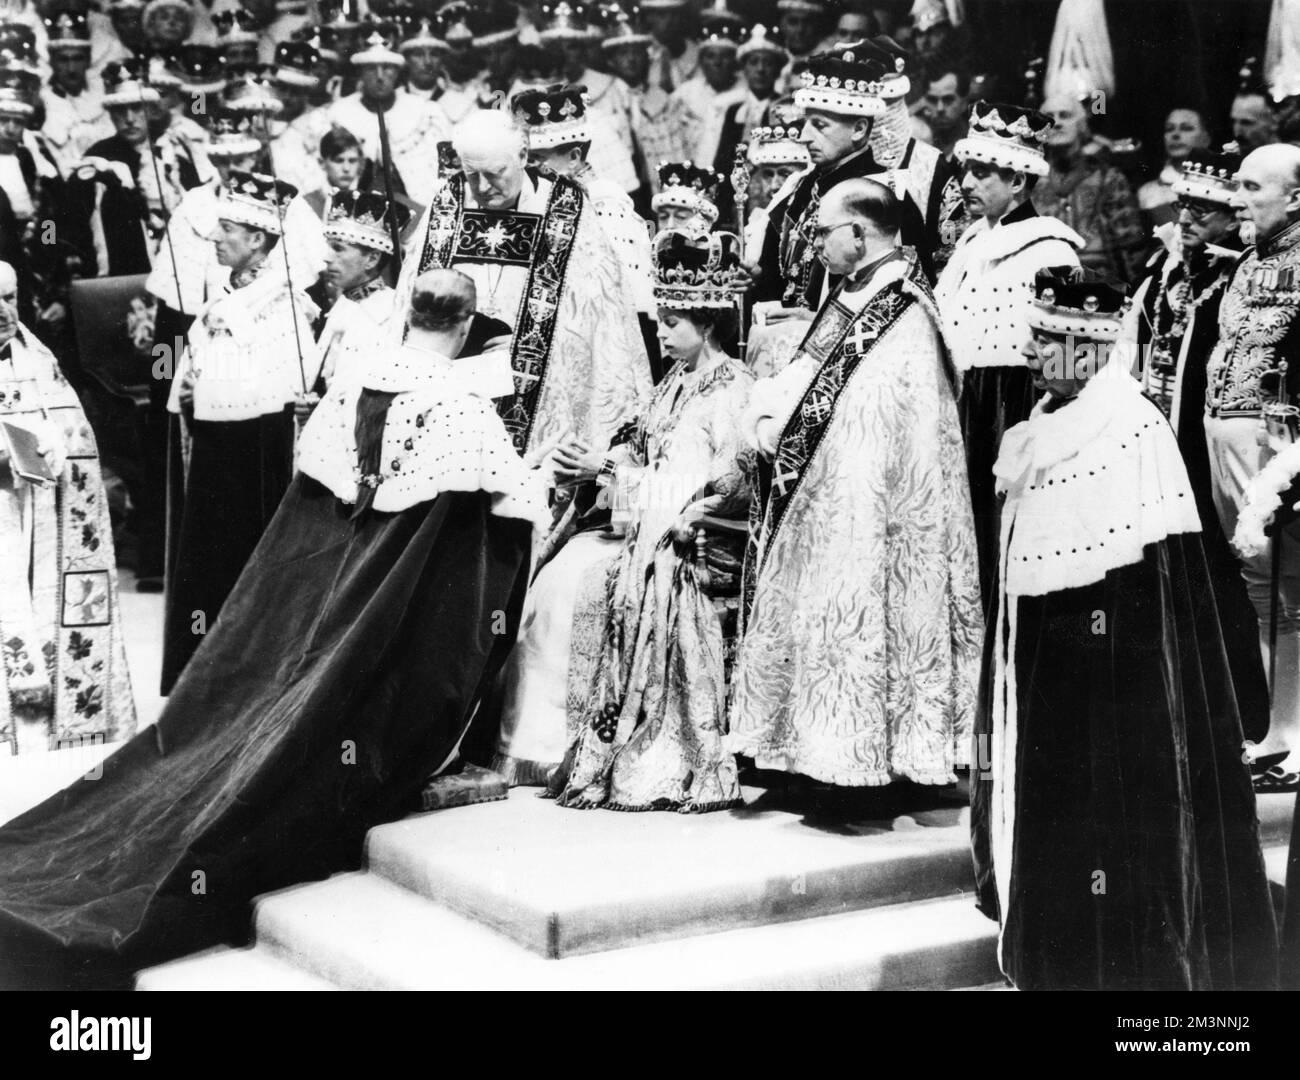 Incoronazione della Regina Elisabetta II il 2 giugno 1953 nell'Abbazia di Westminster, in cui il Duca di Edimburgo rende omaggio. Data: 1953 Foto Stock